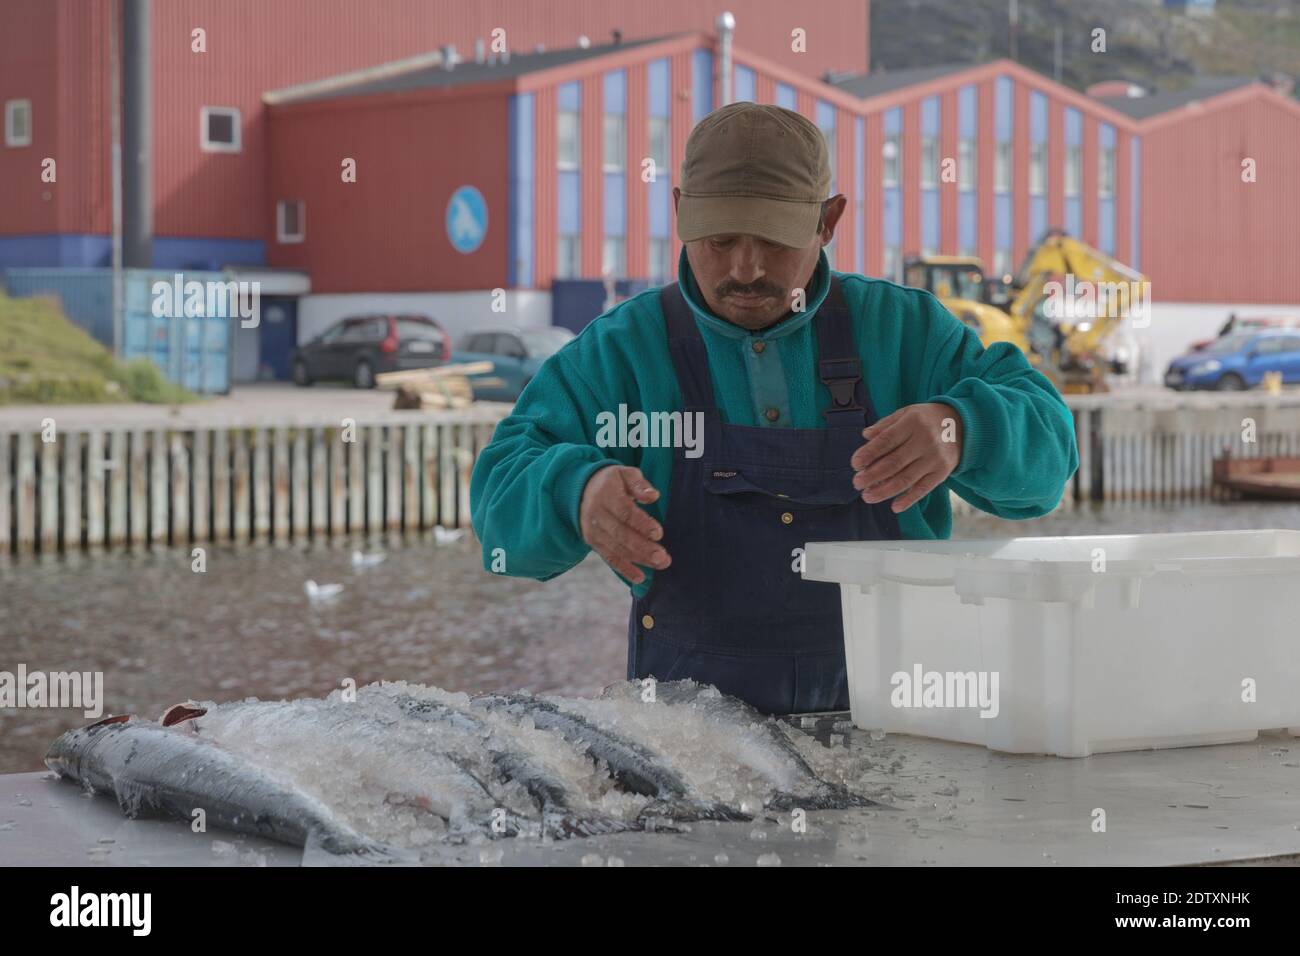 Qaqortoq, Greenland - August 28, 2017: Inuit eskimo man preparing fresh fish on a market in Qaqortoq Greenland. Stock Photo